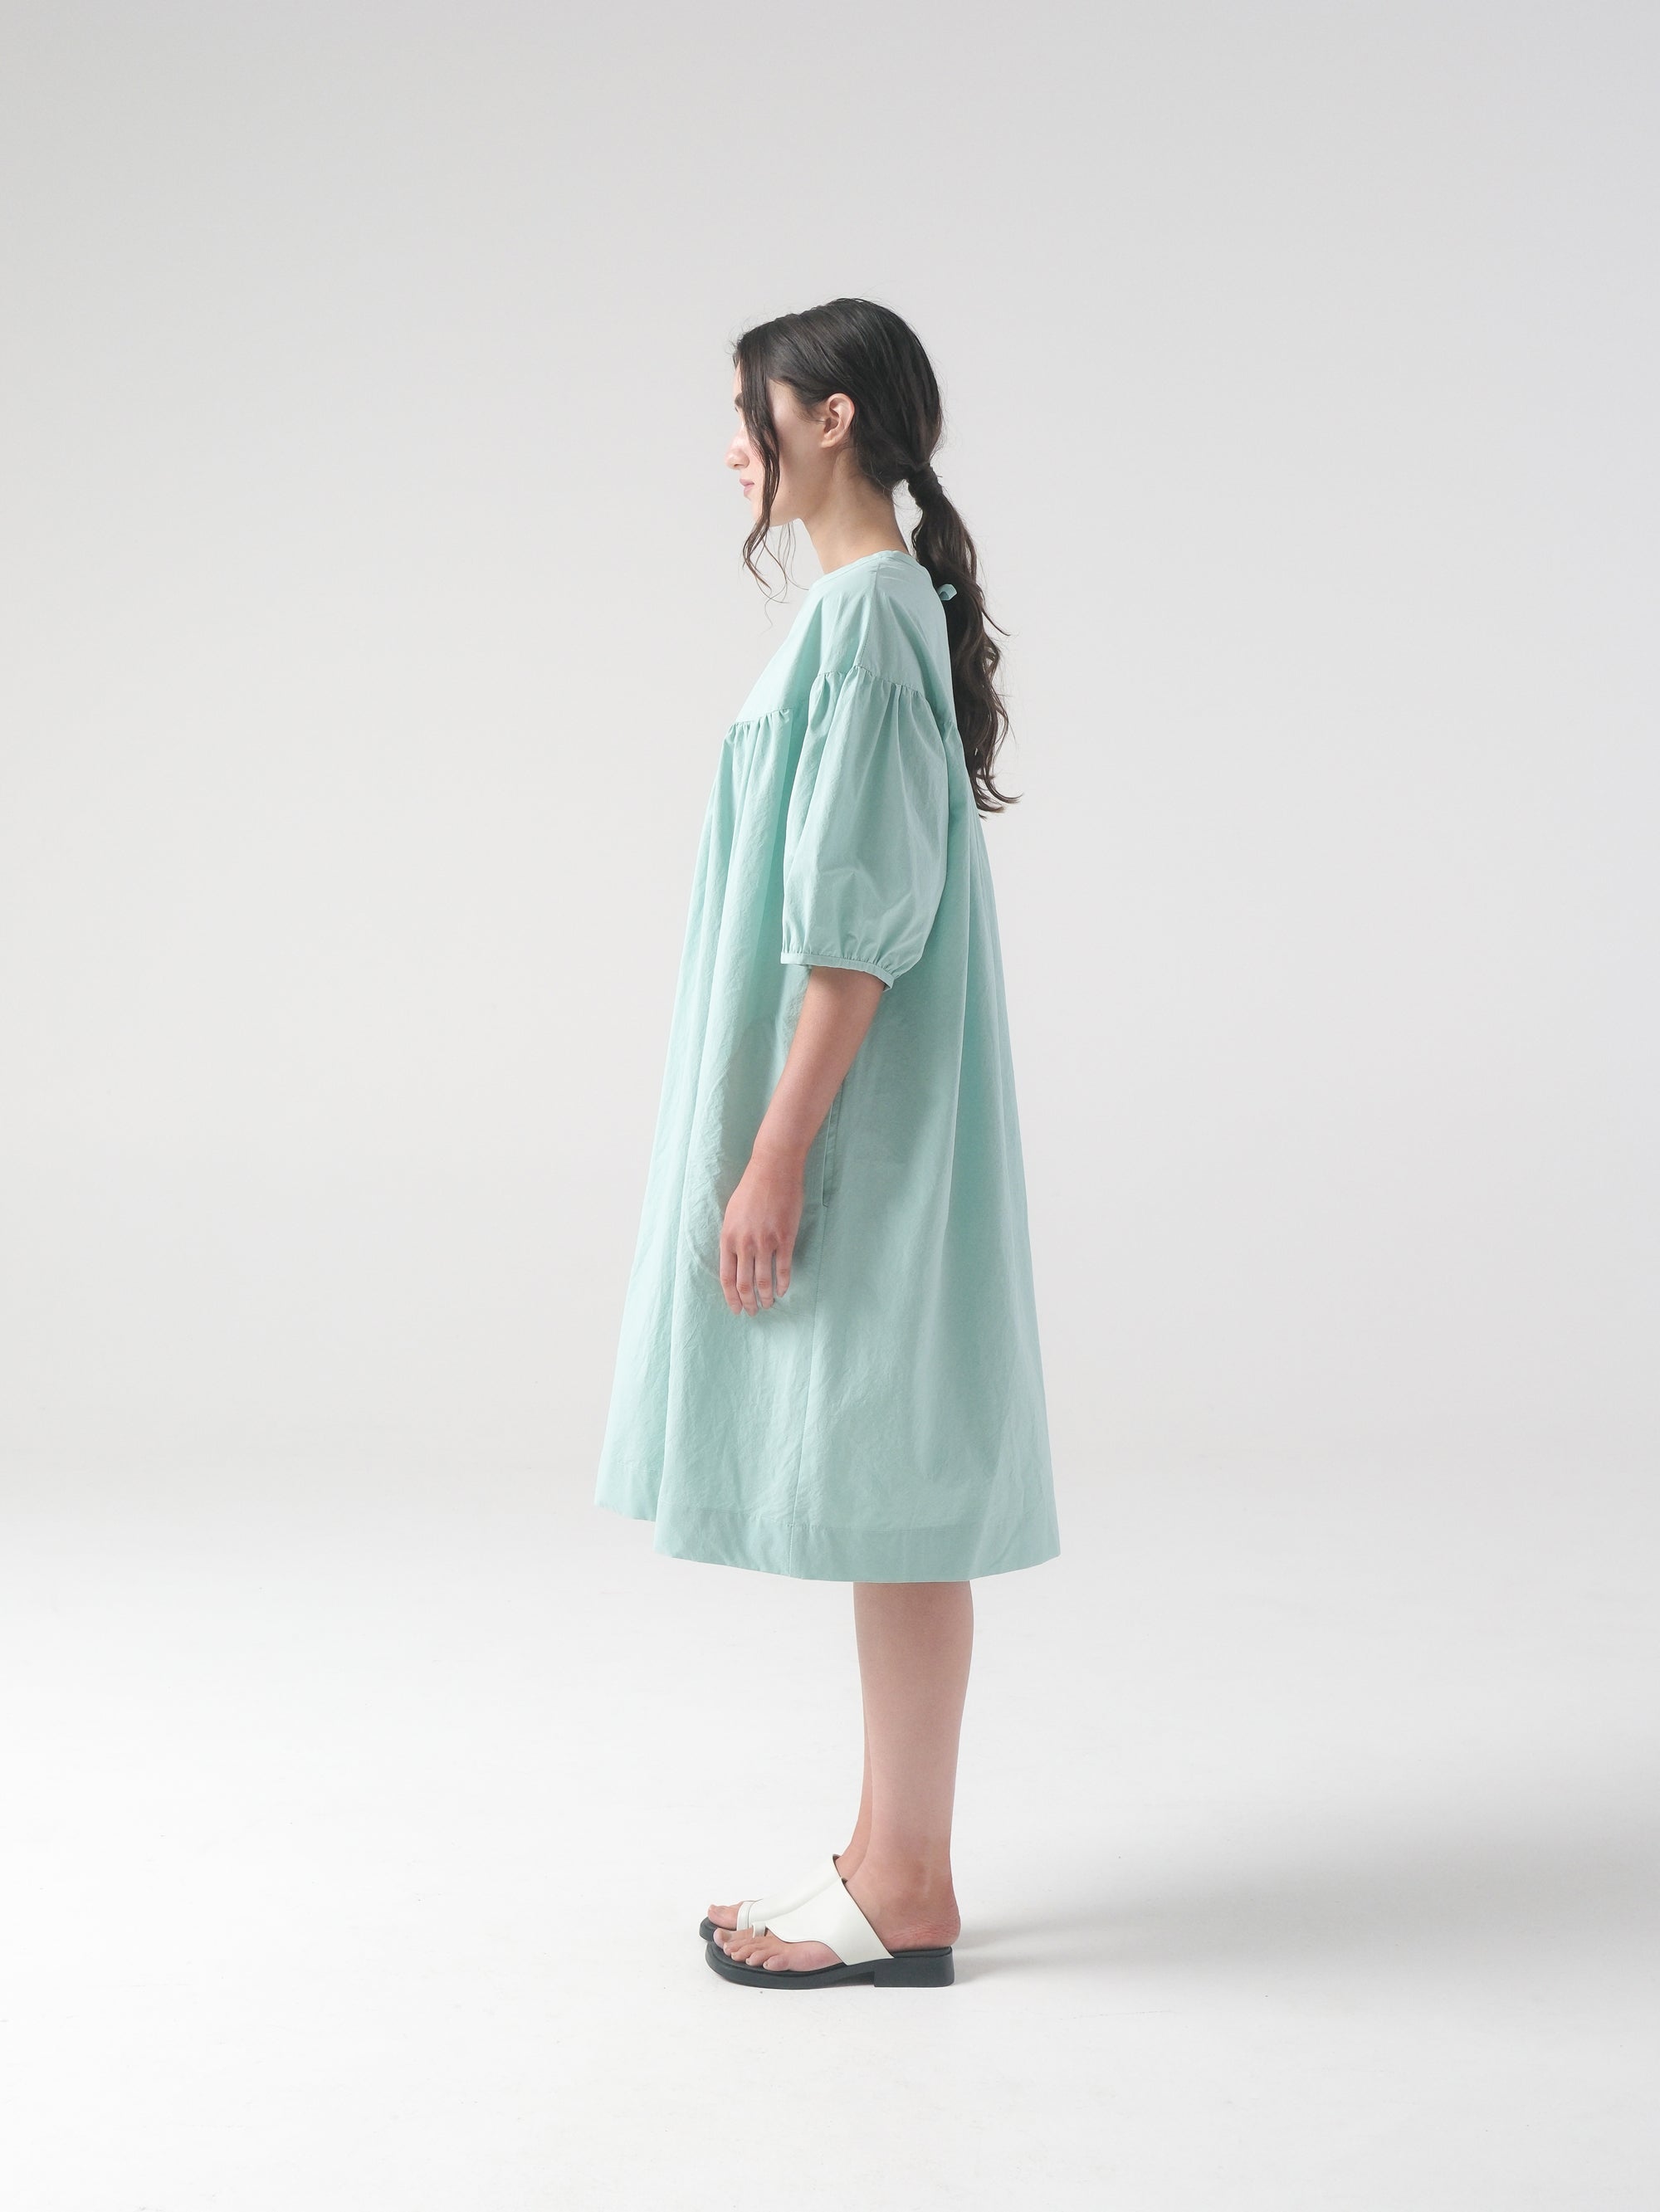 SAMPLE SALE - Pia Dress in Piscine - S/M